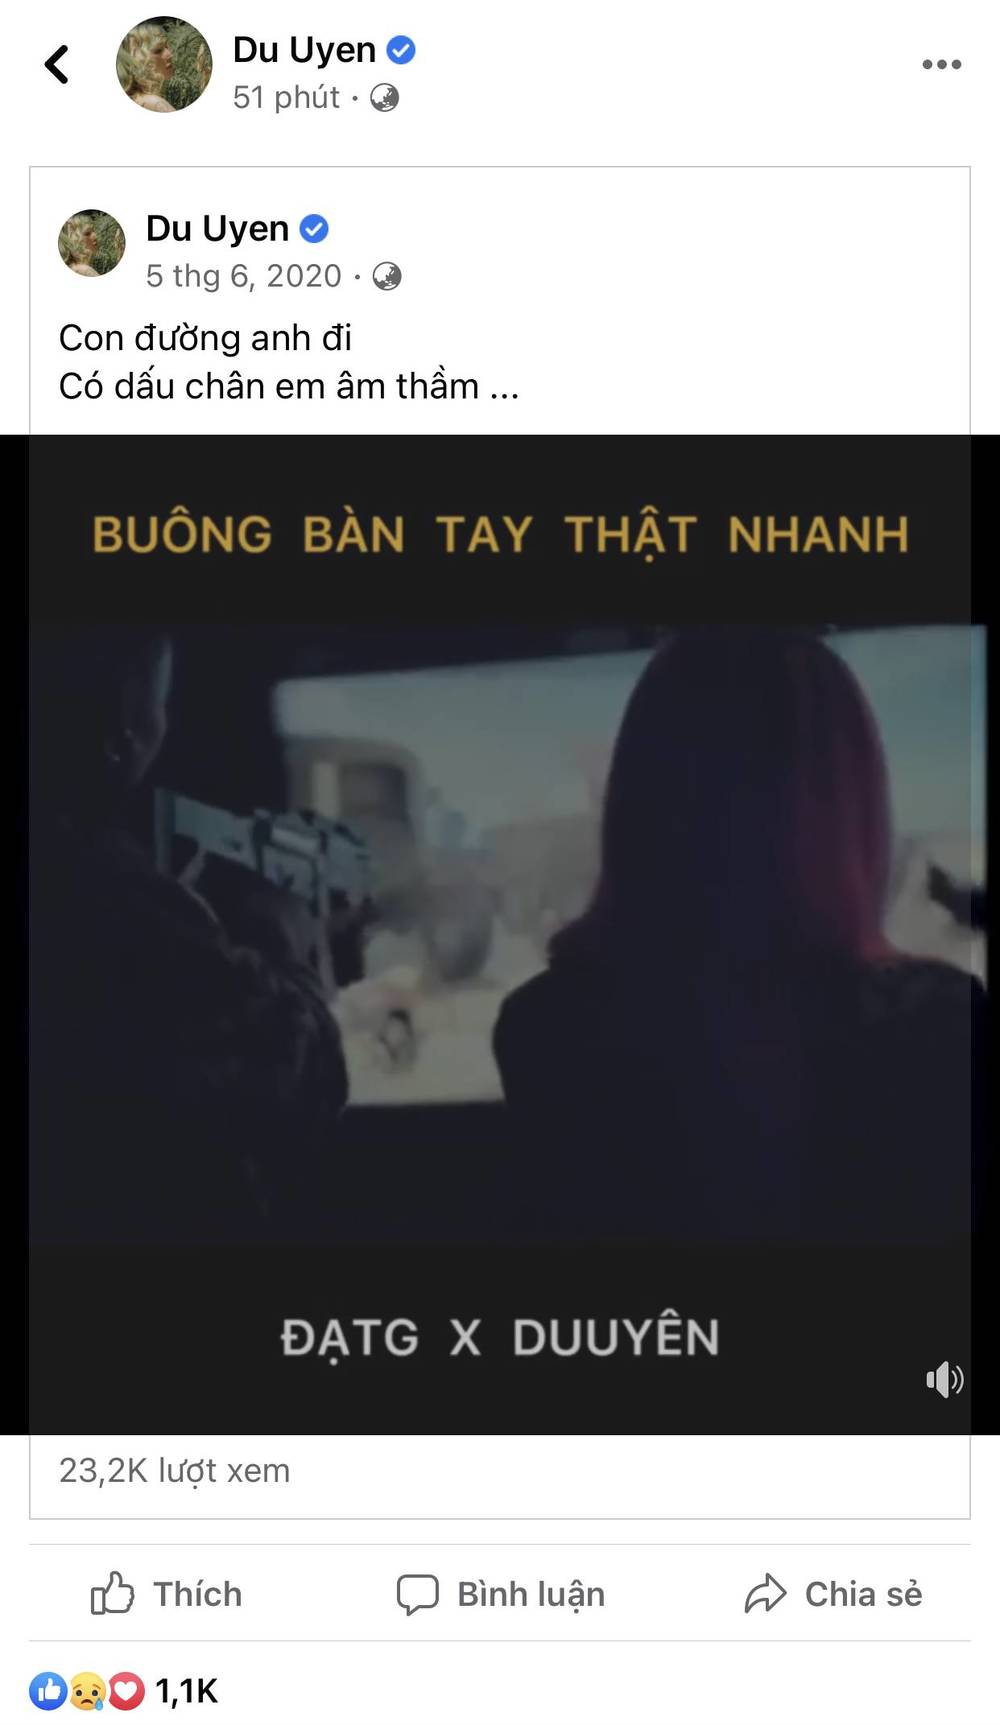  
Du Uyên cũng mới chia sẻ lại MV Buông Bàn Tay Thật Nhanh của cả hai như thay lời muốn nói. (Ảnh: Chụp màn hình) - Tin sao Viet - Tin tuc sao Viet - Scandal sao Viet - Tin tuc cua Sao - Tin cua Sao